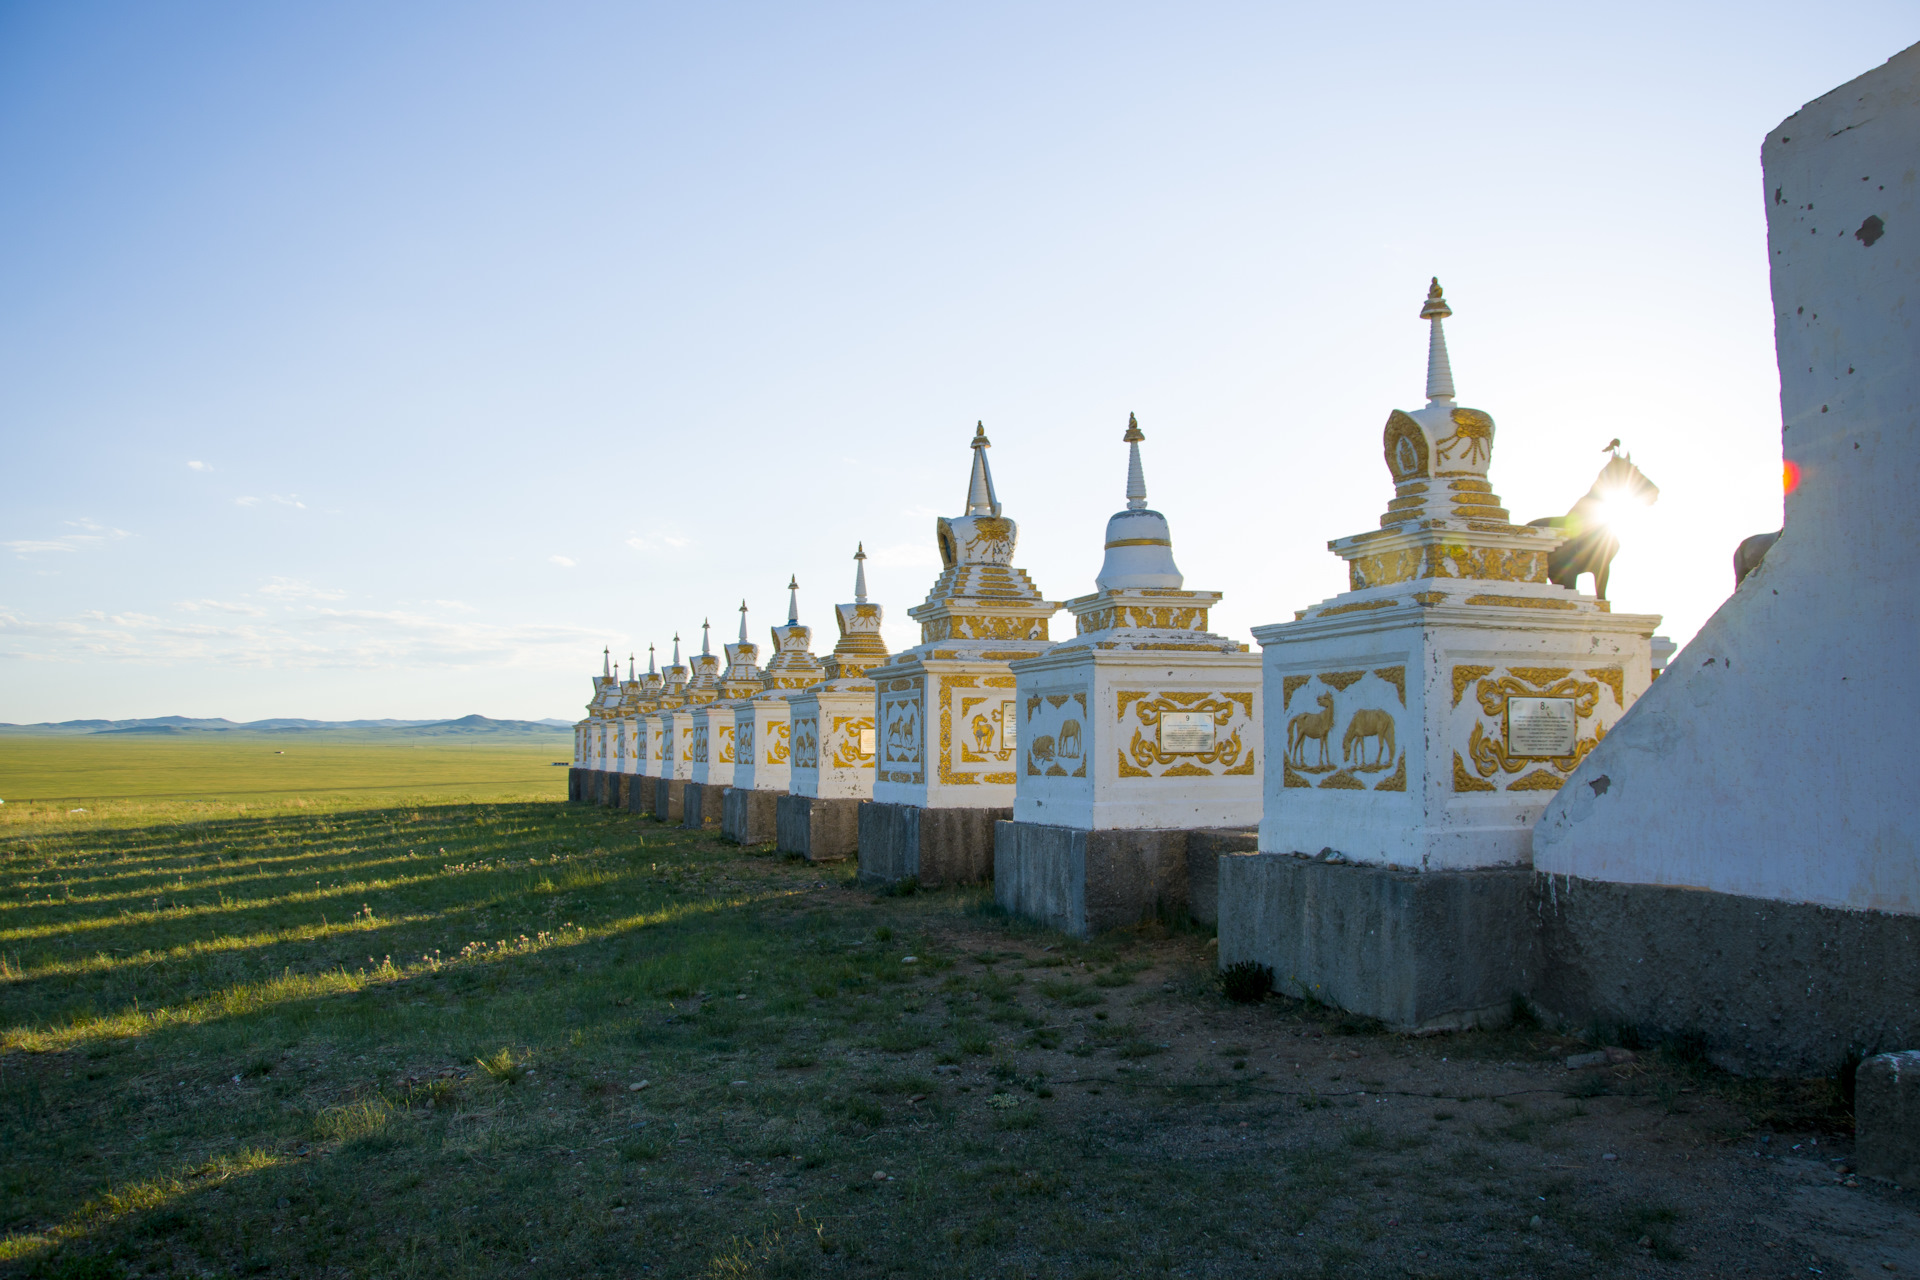 Арвайхээр. Арвайхээр Монголия. Кладбище лошадей в Монголии. Кладбище. Монголия Арвайхээр кирпичный завод 1981 г..